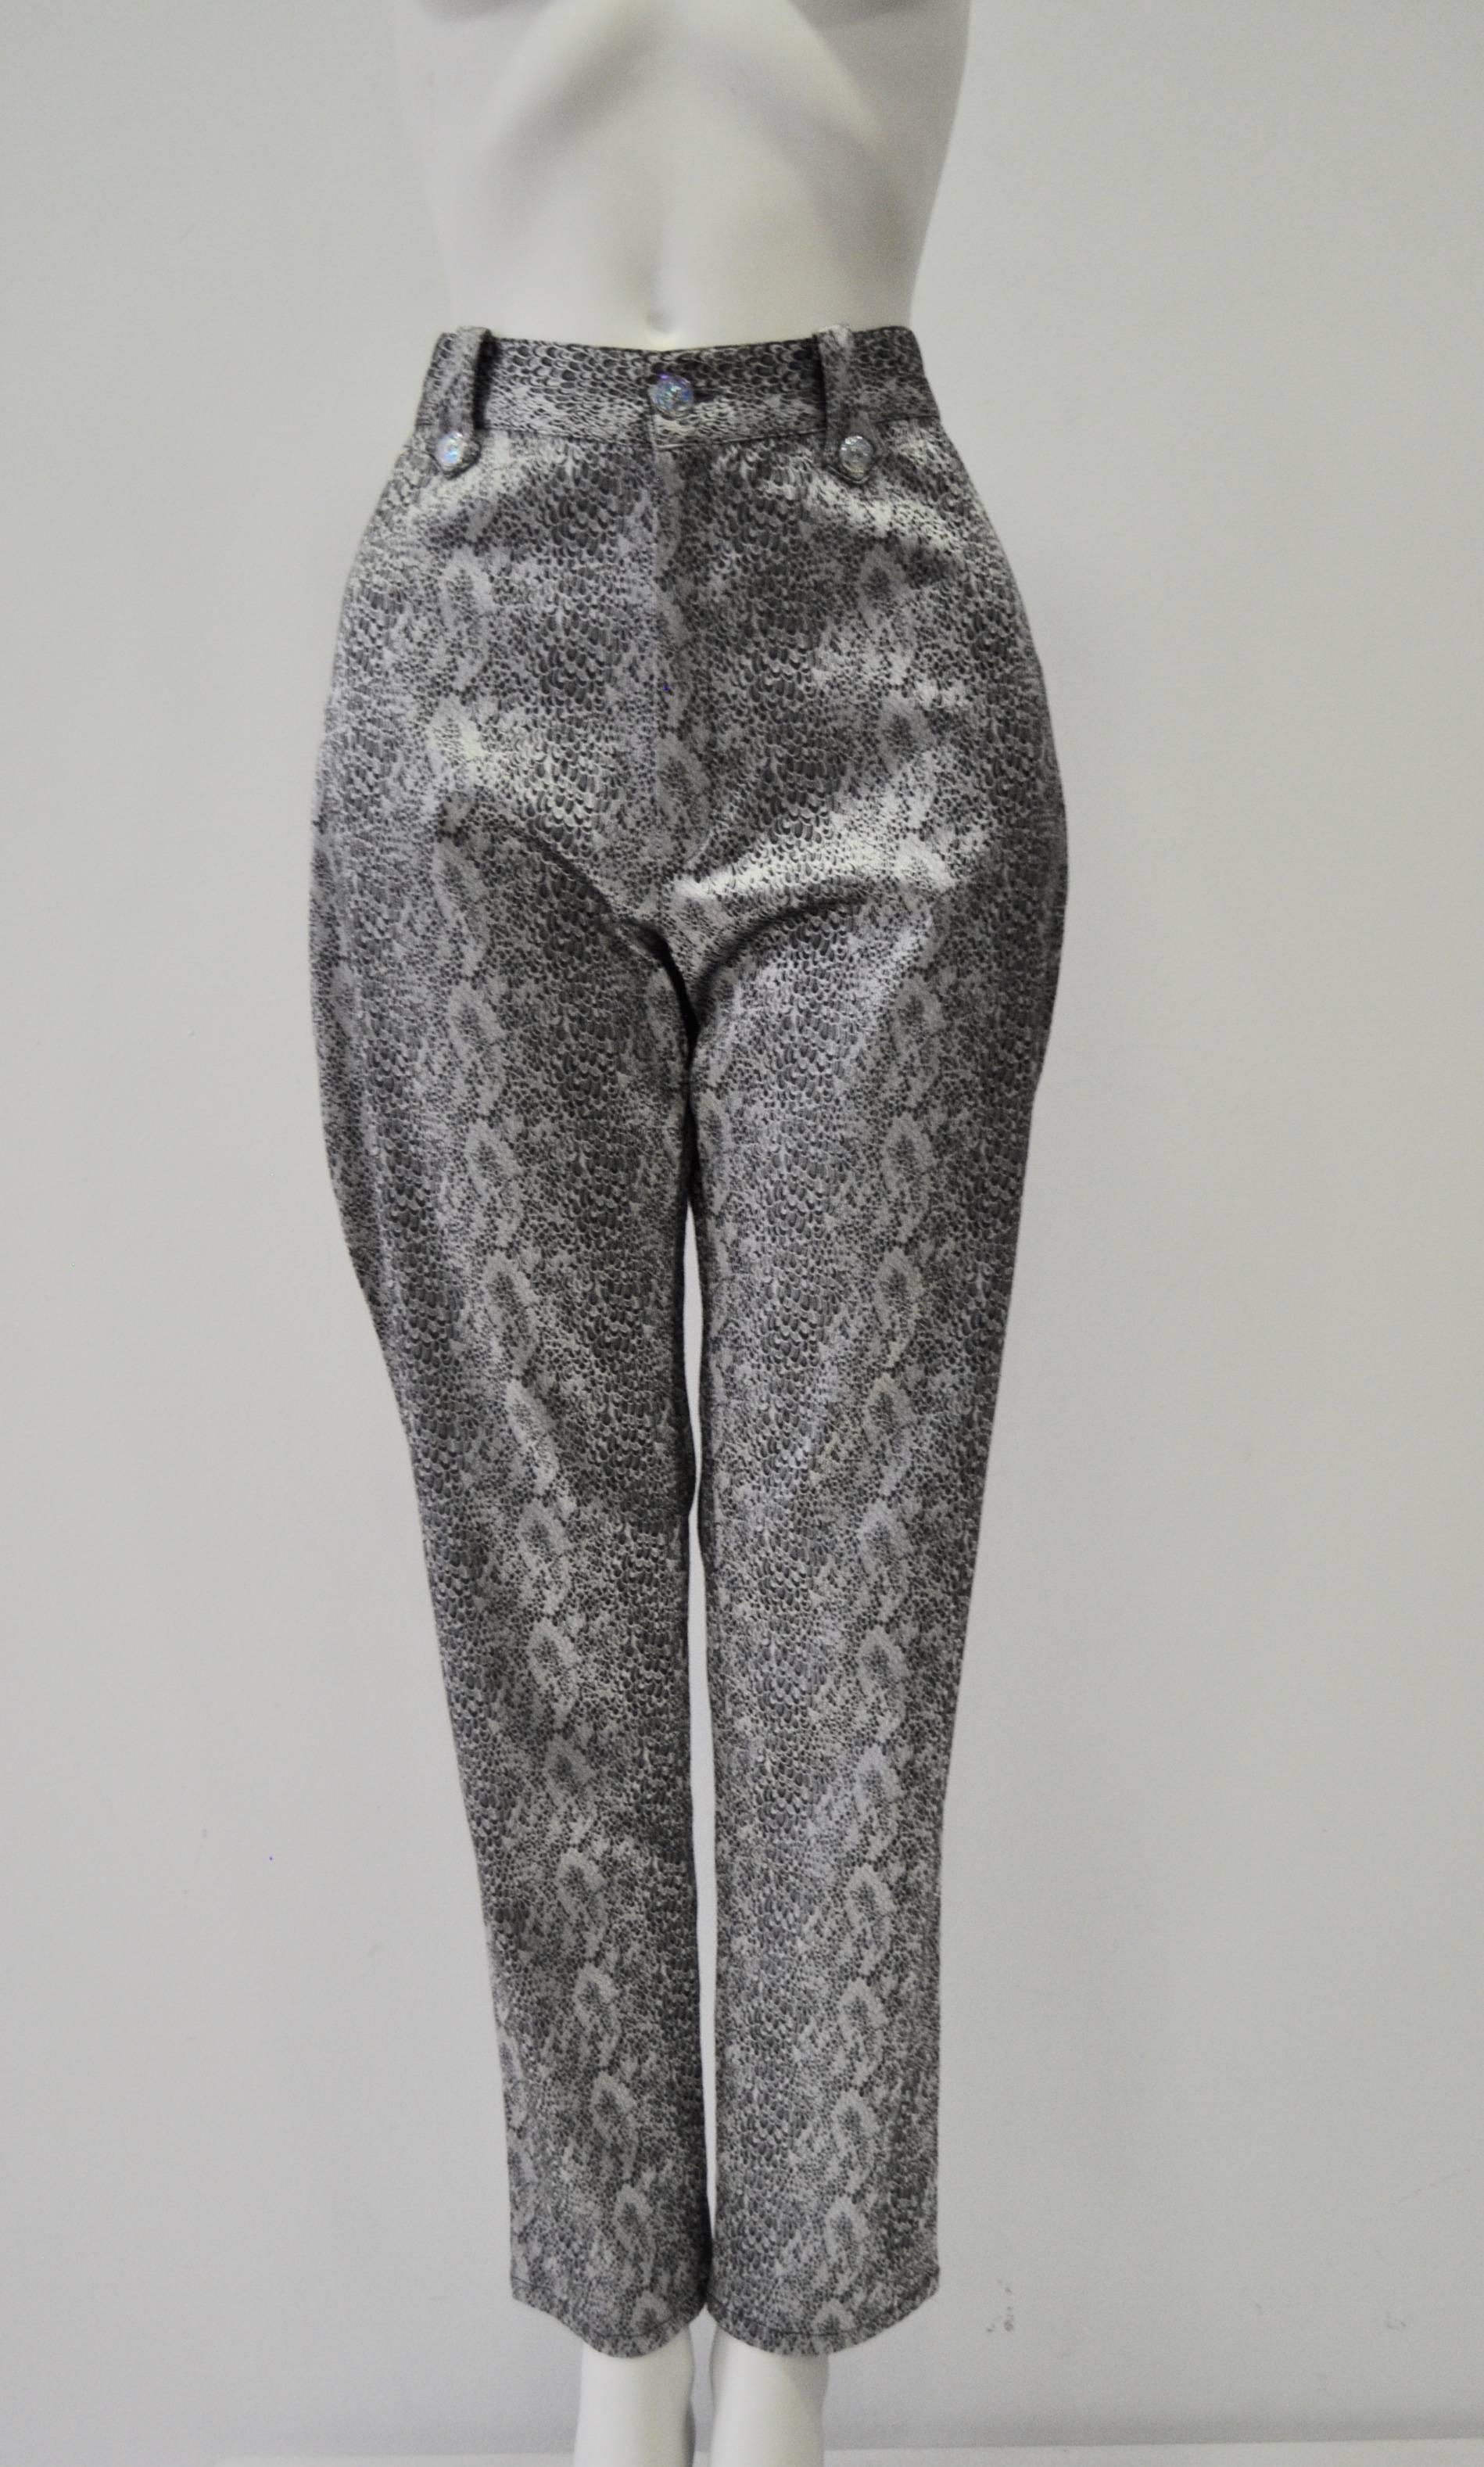 Sensational Bazar de Christian Lacroix Strapless Bustier Snake Print Pantsuit For Sale 1